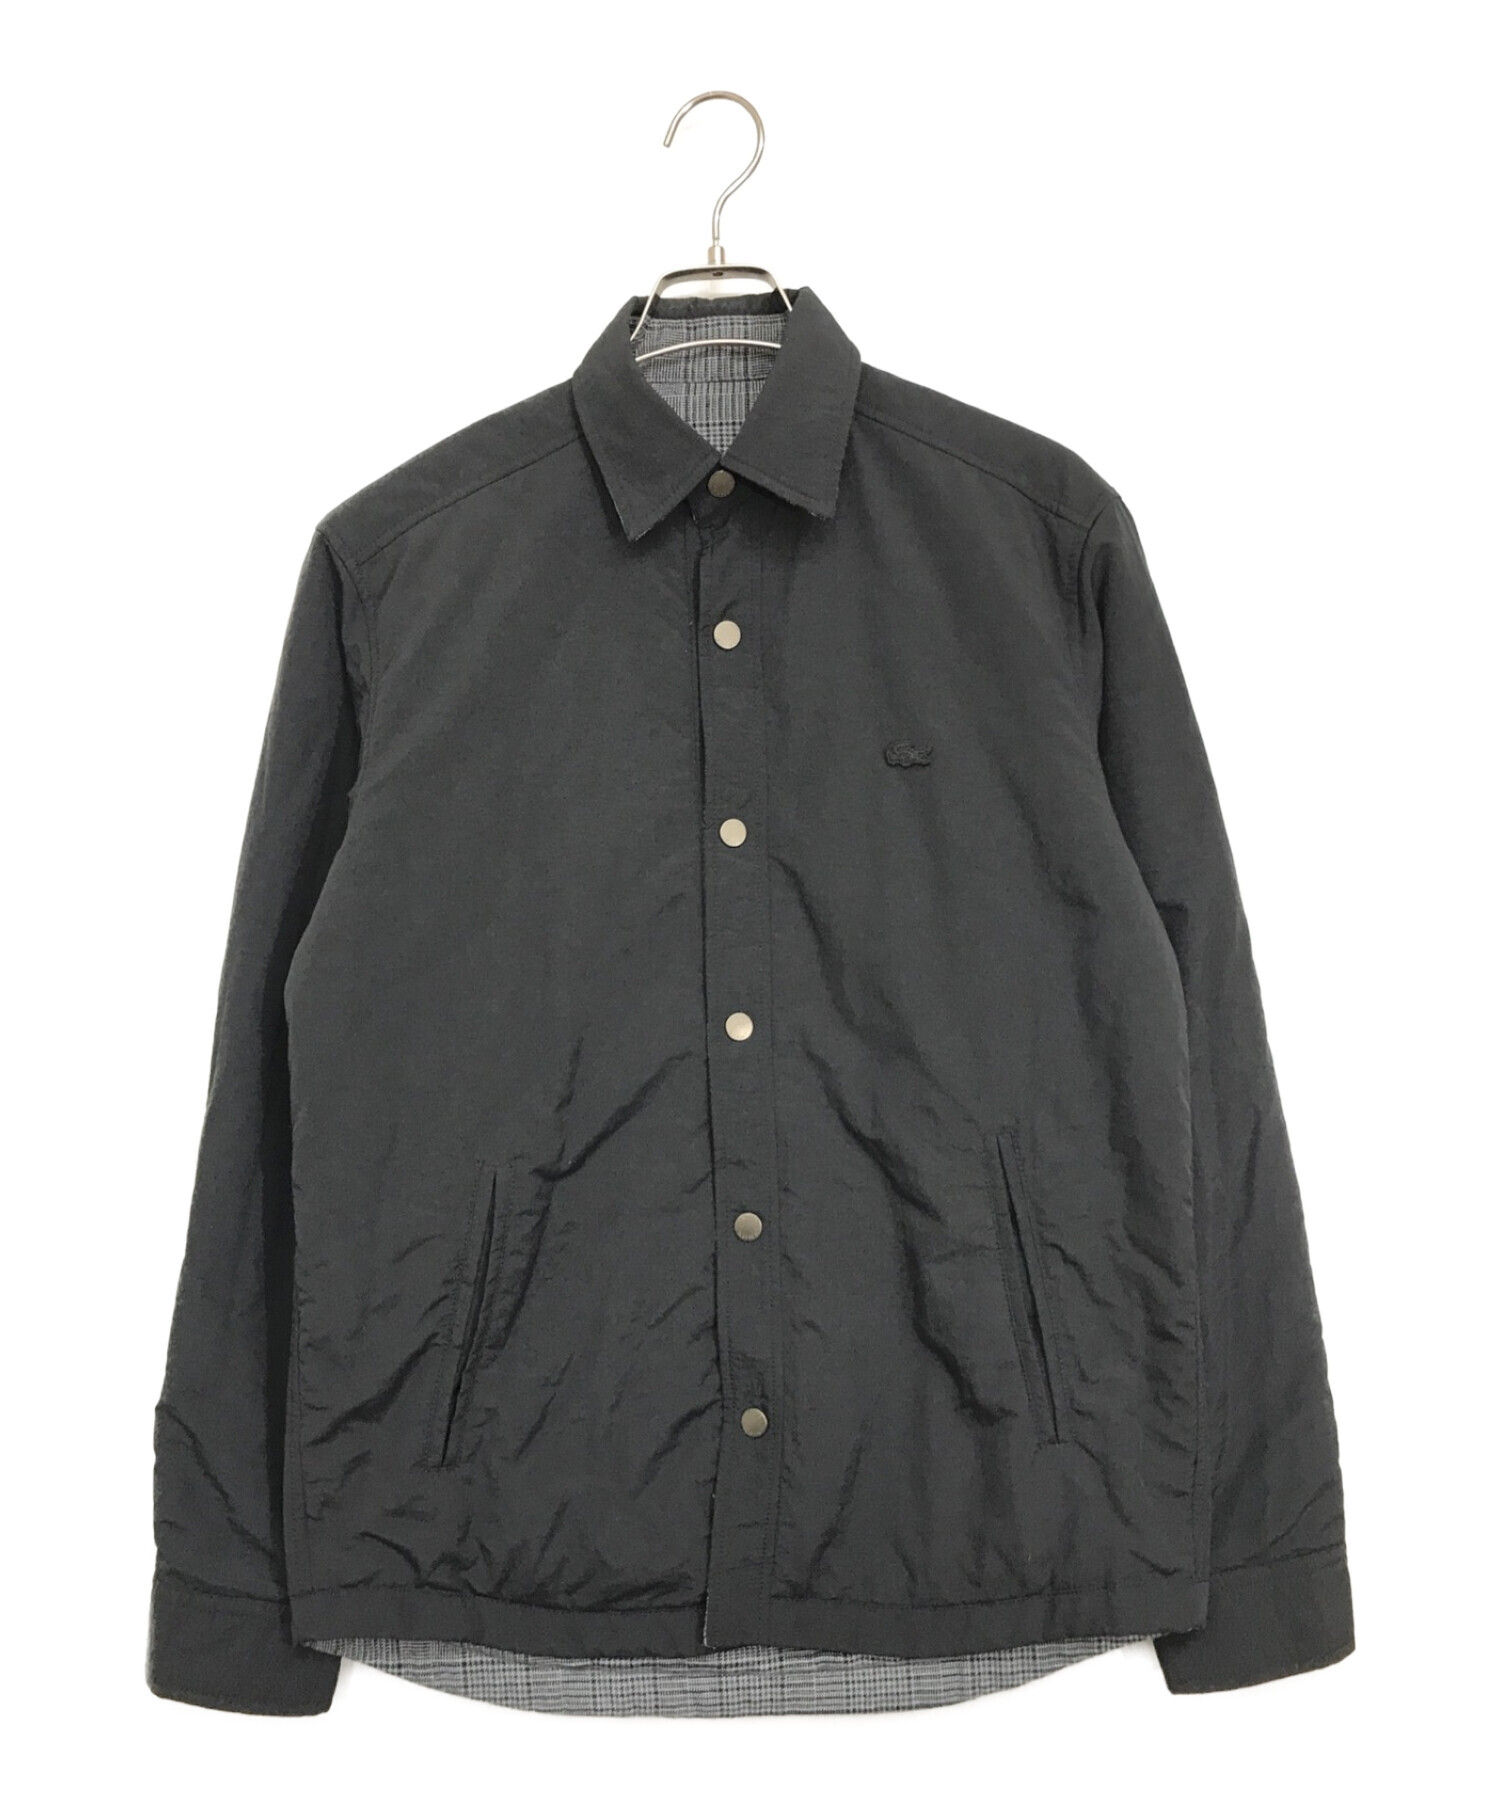 LACOSTE (ラコステ) 中綿リバーシブルシャツジャケット ブラック サイズ:S